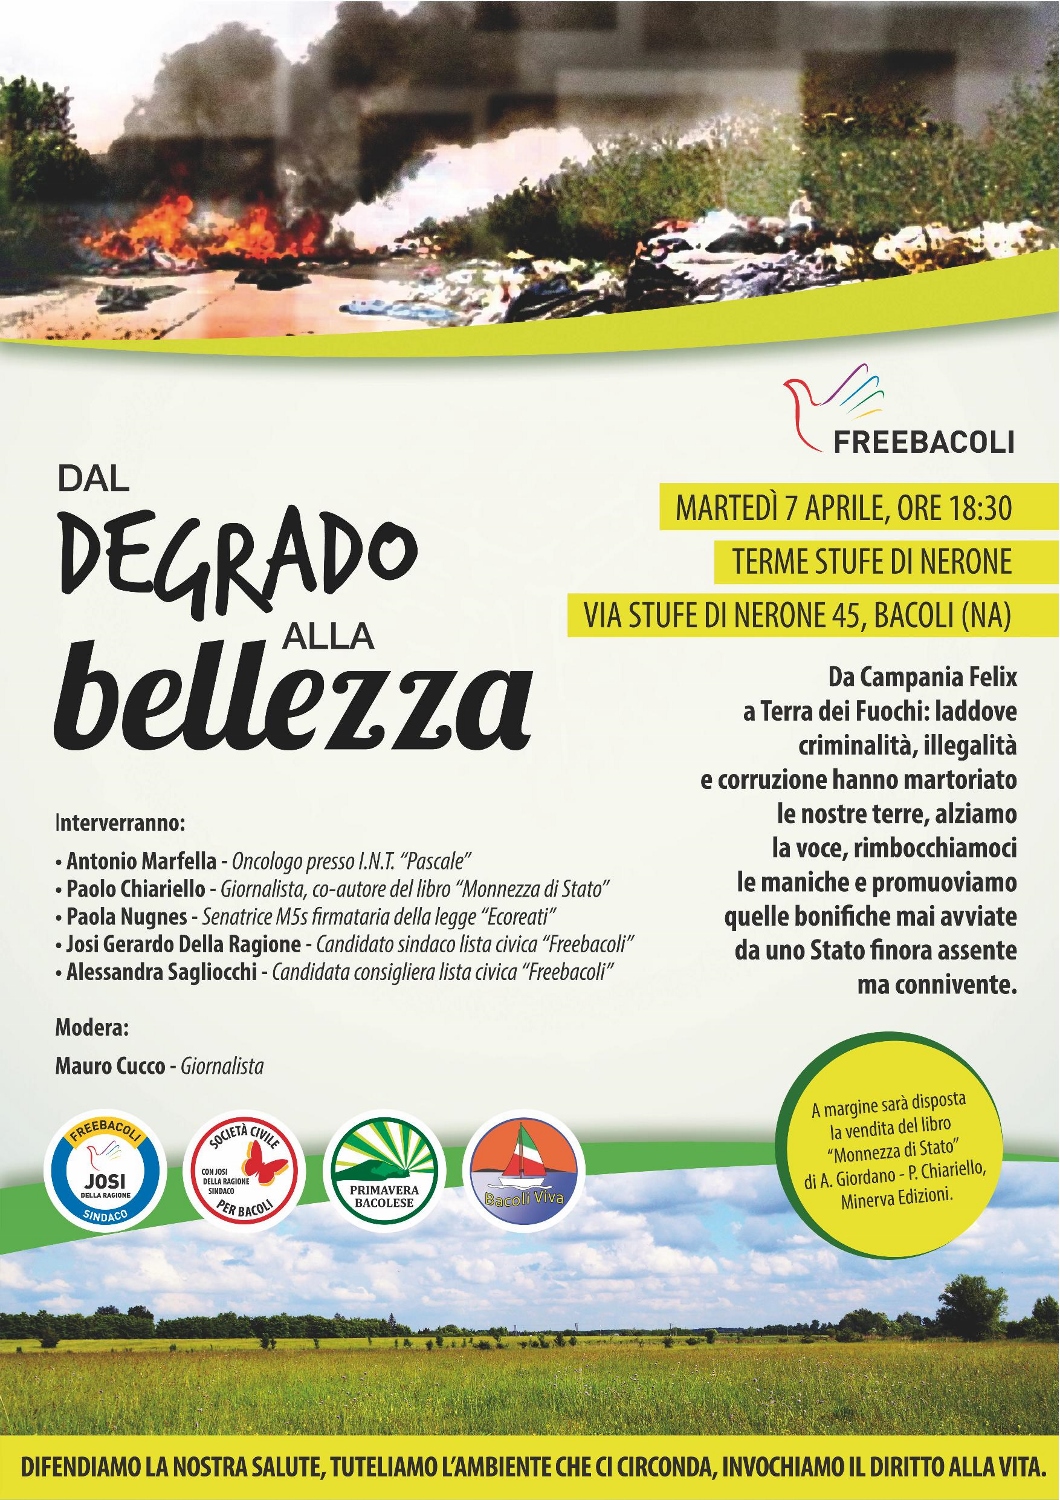  Freebacoli presenta “Dal Degrado alla Bellezza”, dibattito sulla tutela ambientale